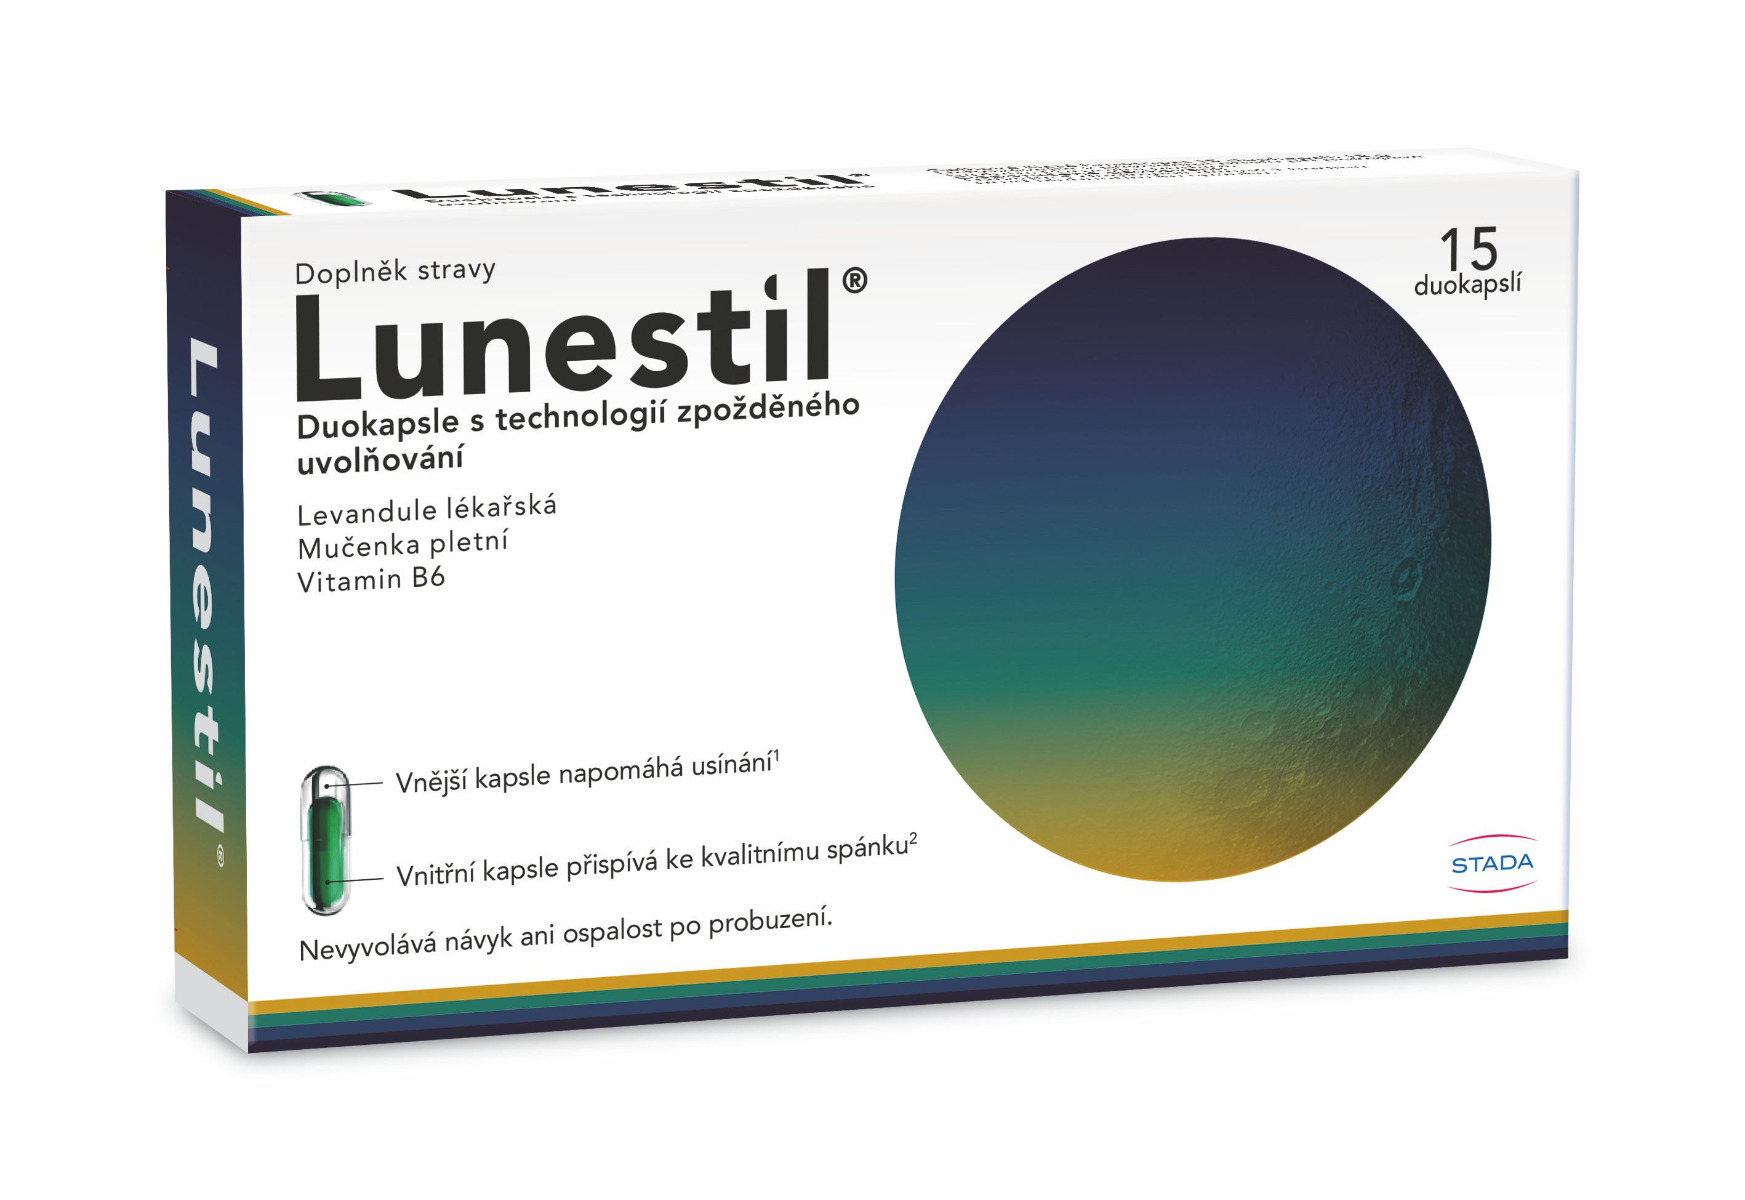 Lunestil 15 duokapslí Lunestil